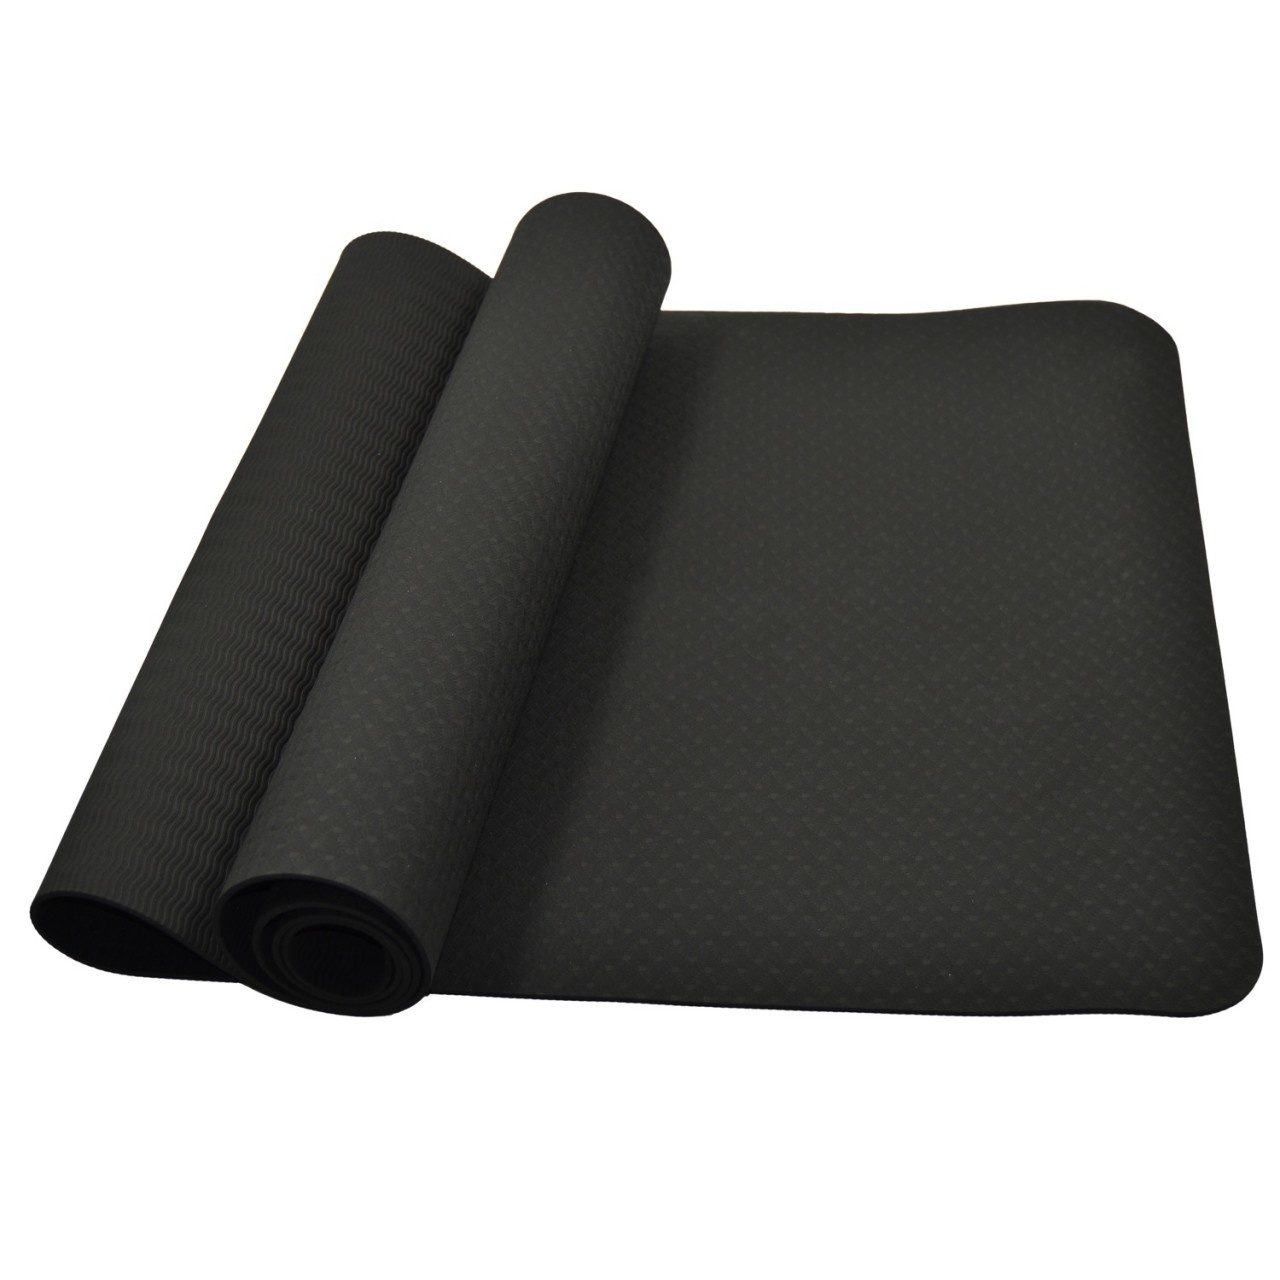 woede Assimilatie Dominant Yoga mat zwart 183 x 61 x 0,4cm kopen?| Best Fightshop✓ - Best Fightshop -  Vechtsportartikelen